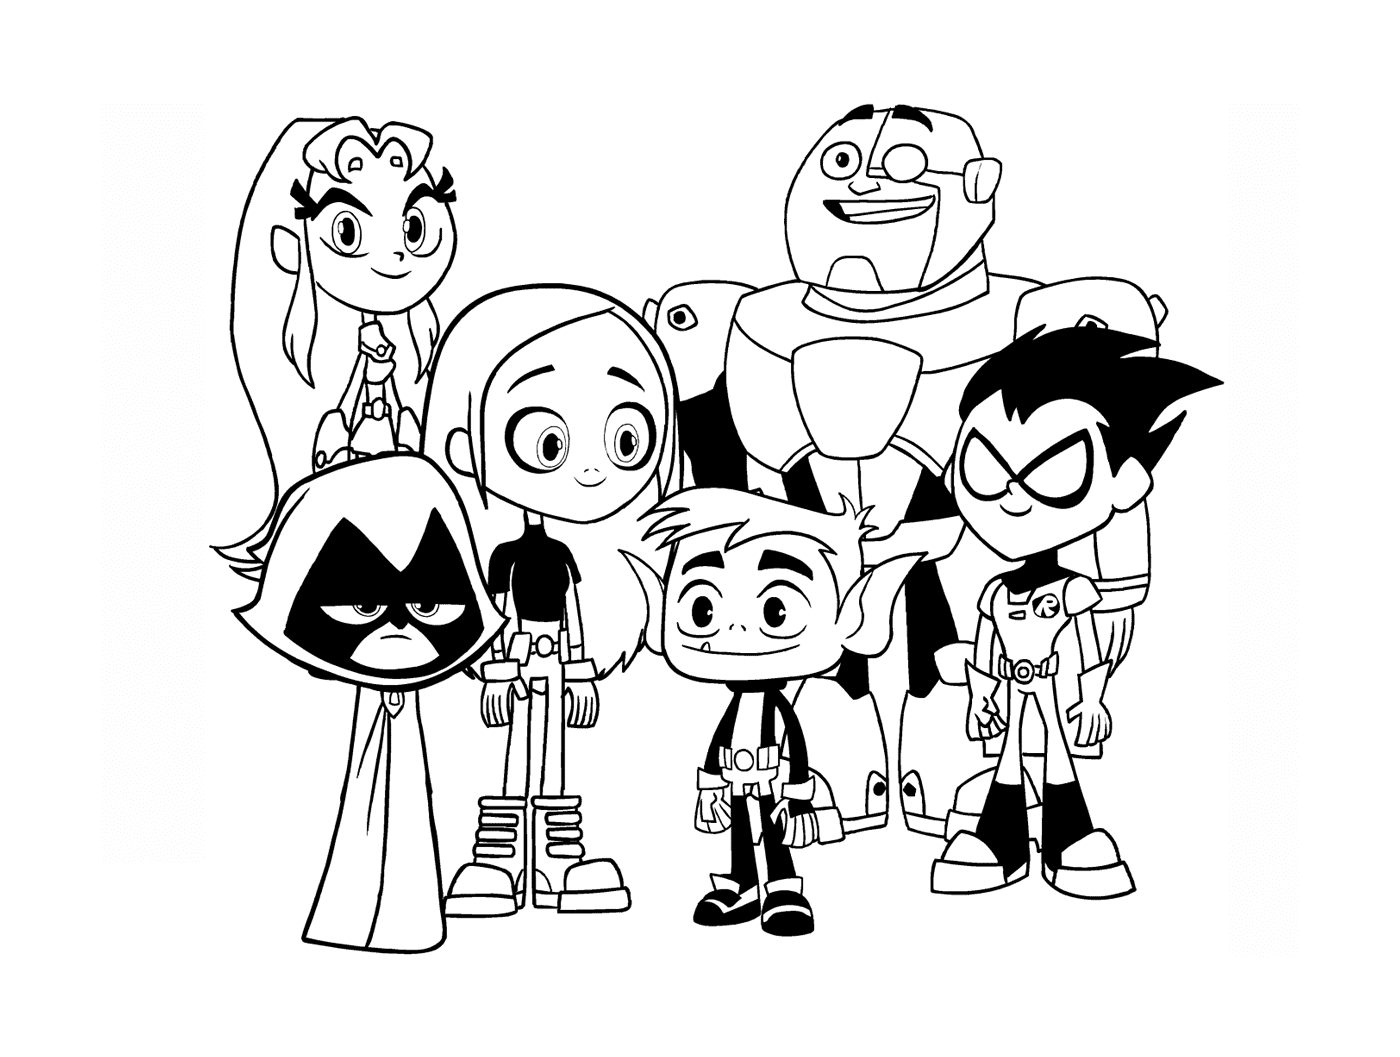  grupo de personajes de dibujos animados stand 